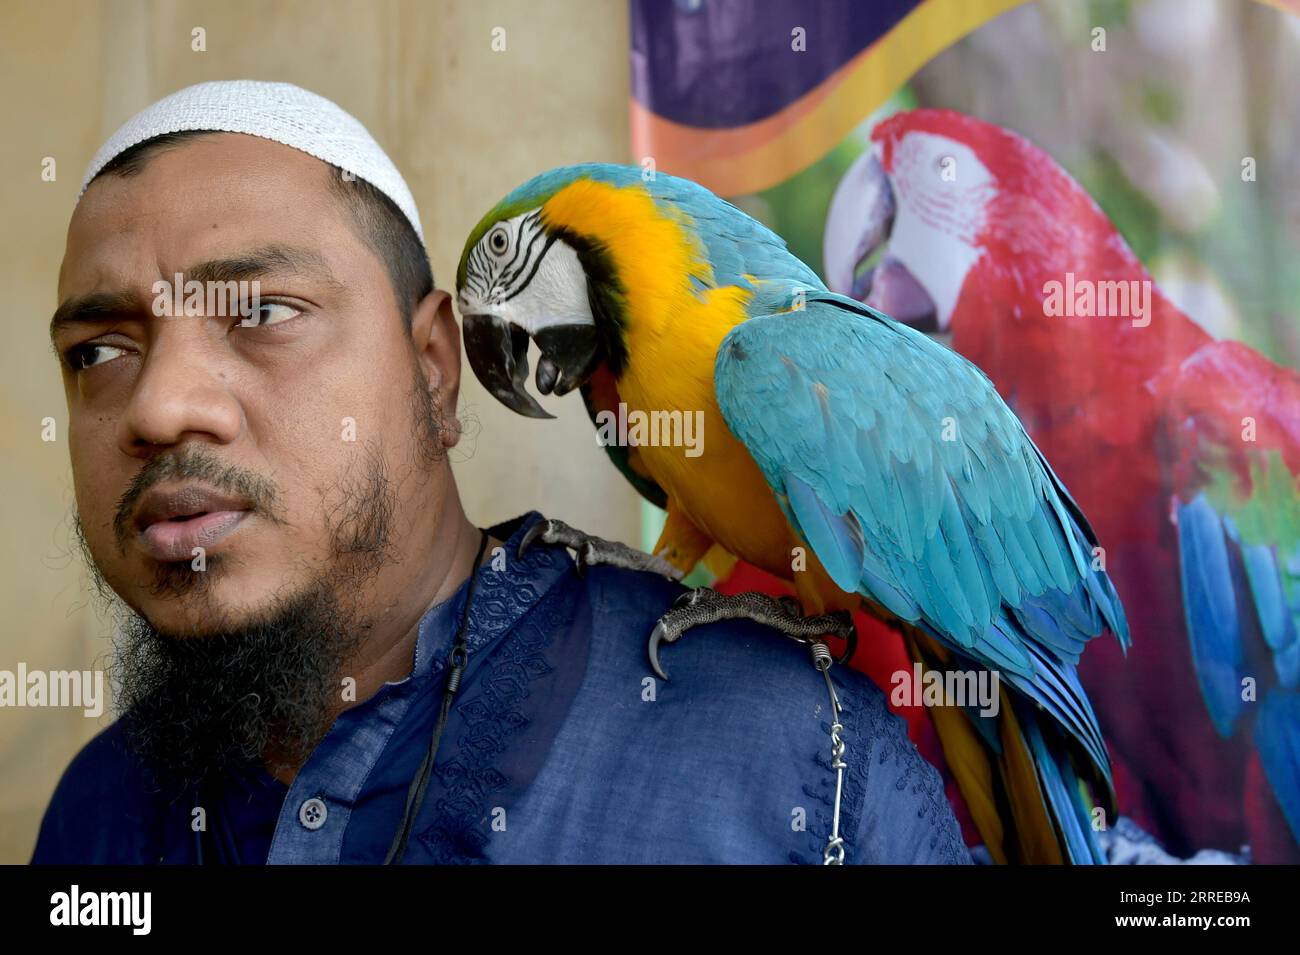 220217 -- DHAKA, le 17 février 2022 -- Un homme pose pour une photo avec son perroquet lors d'une foire du bétail à Dhaka, capitale du Bangladesh, le 16 février 2022. Une foire du bétail a lieu mercredi à Dhaka pour que les gens exposent leur bétail et leurs oiseaux exotiques. BANGLADESH-DHAKA-BÉTAIL-FOIRE Salim PUBLICATIONxNOTxINxCHN Banque D'Images